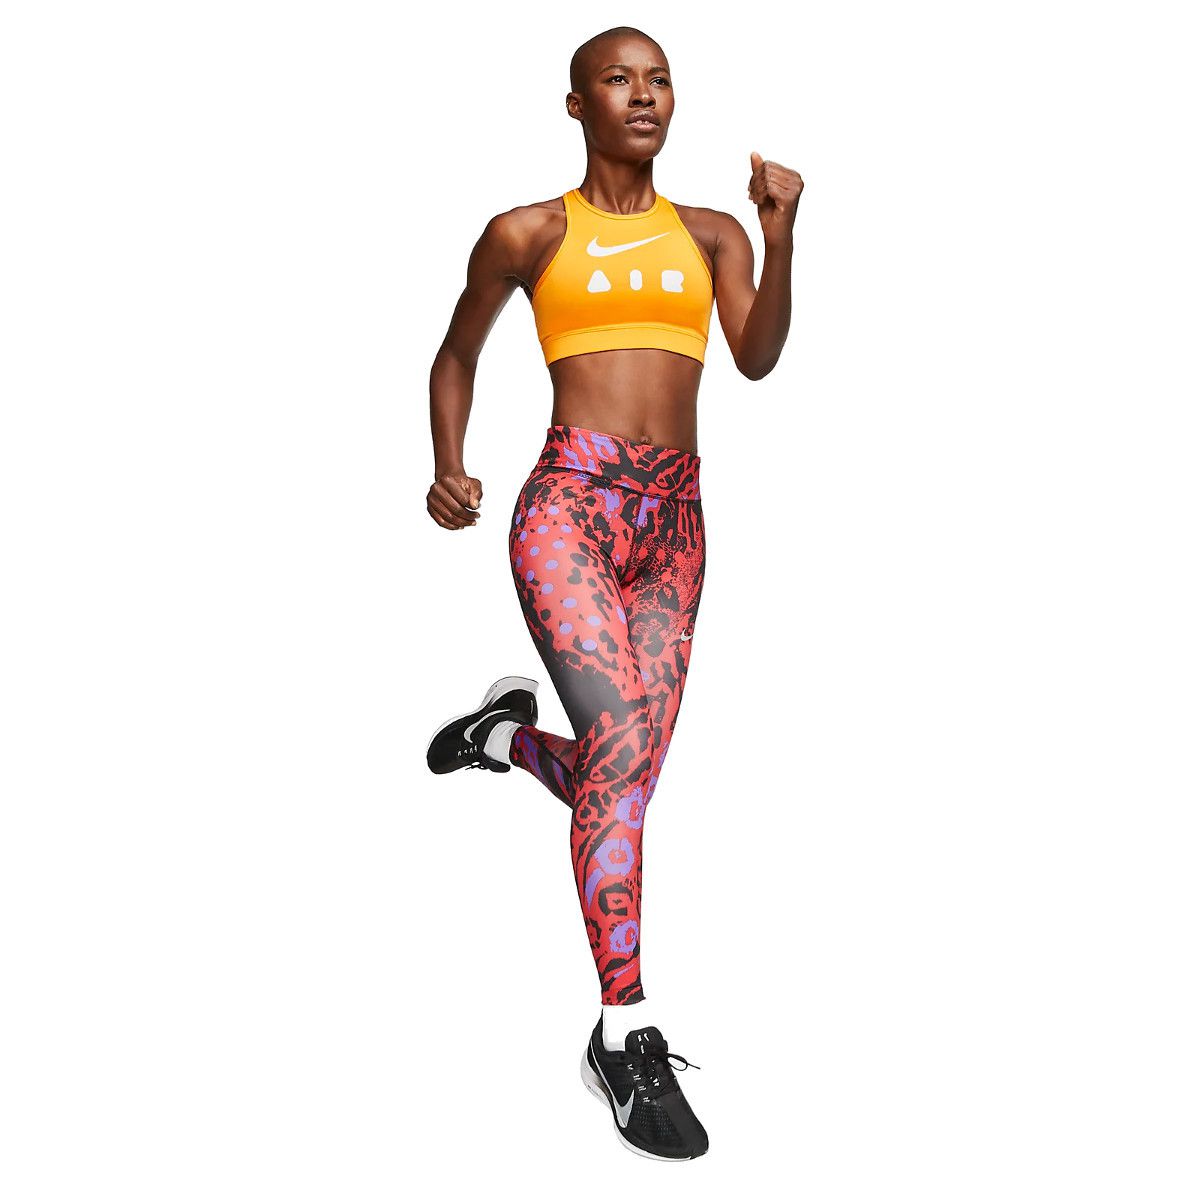 Legging Nike Fast Feminina - Compre Agora